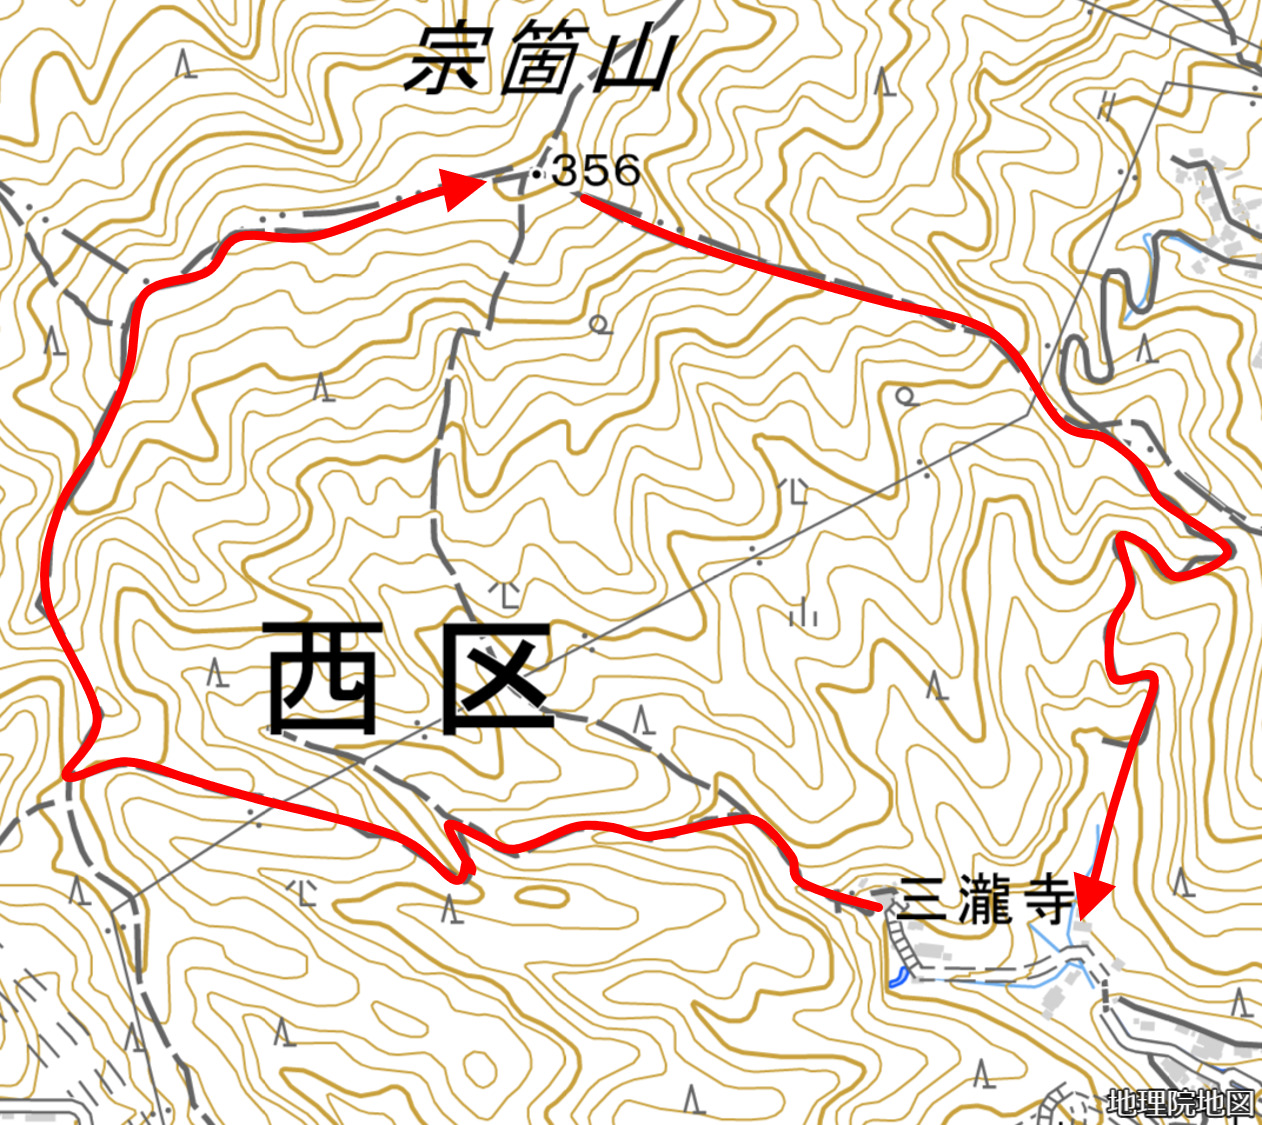 宗箇山のルート図